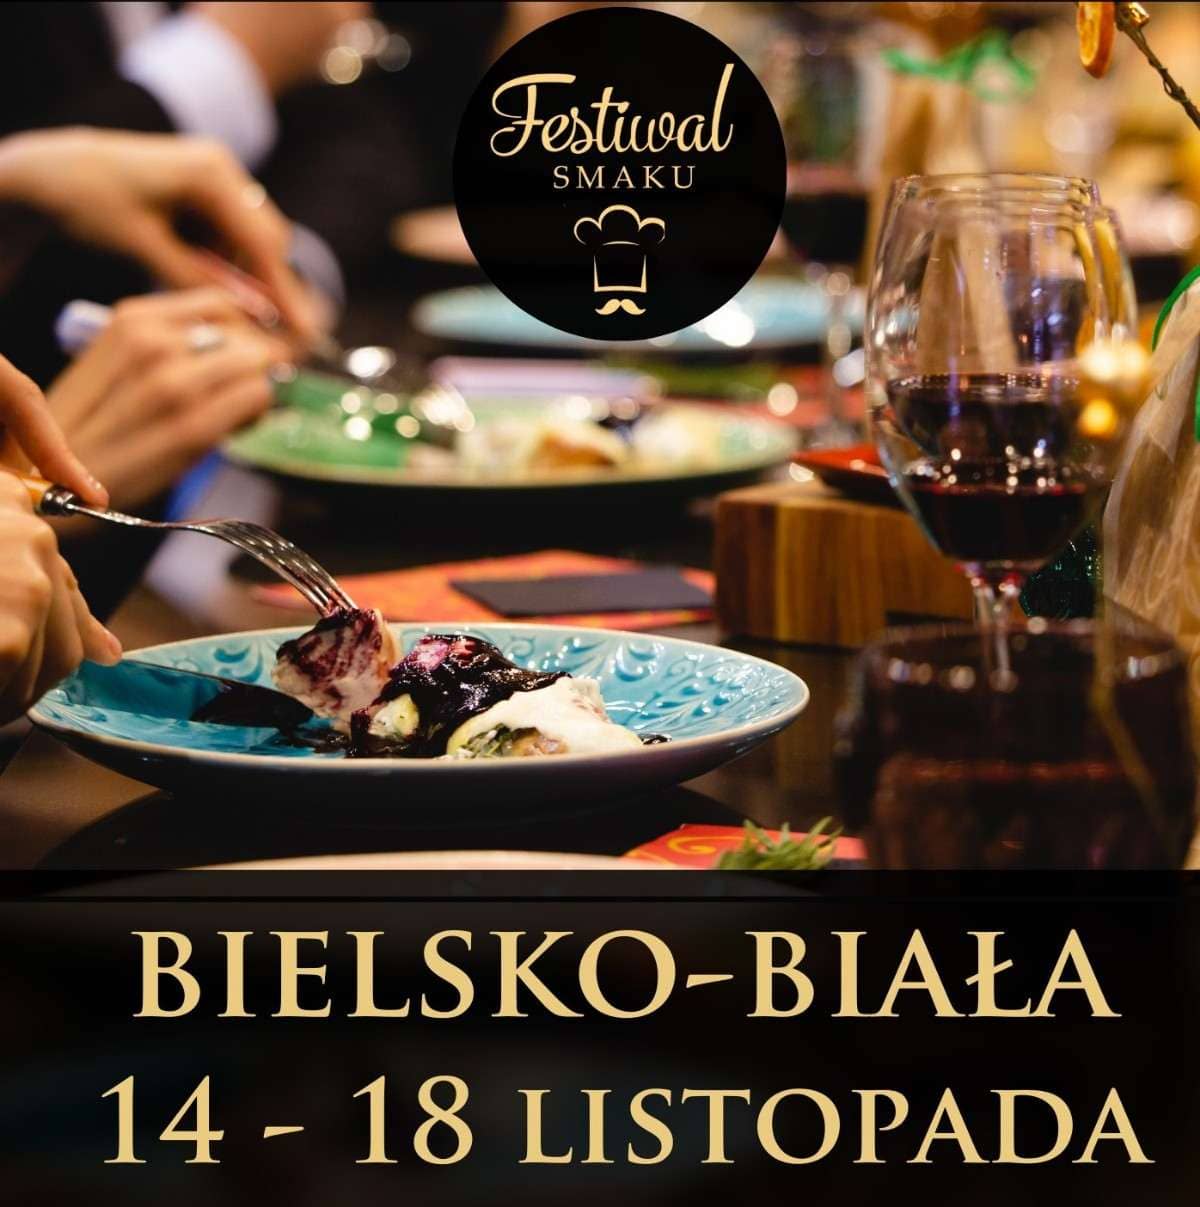 Festiwal Smaku - restauracje z Bielska-Białej zapraszają!